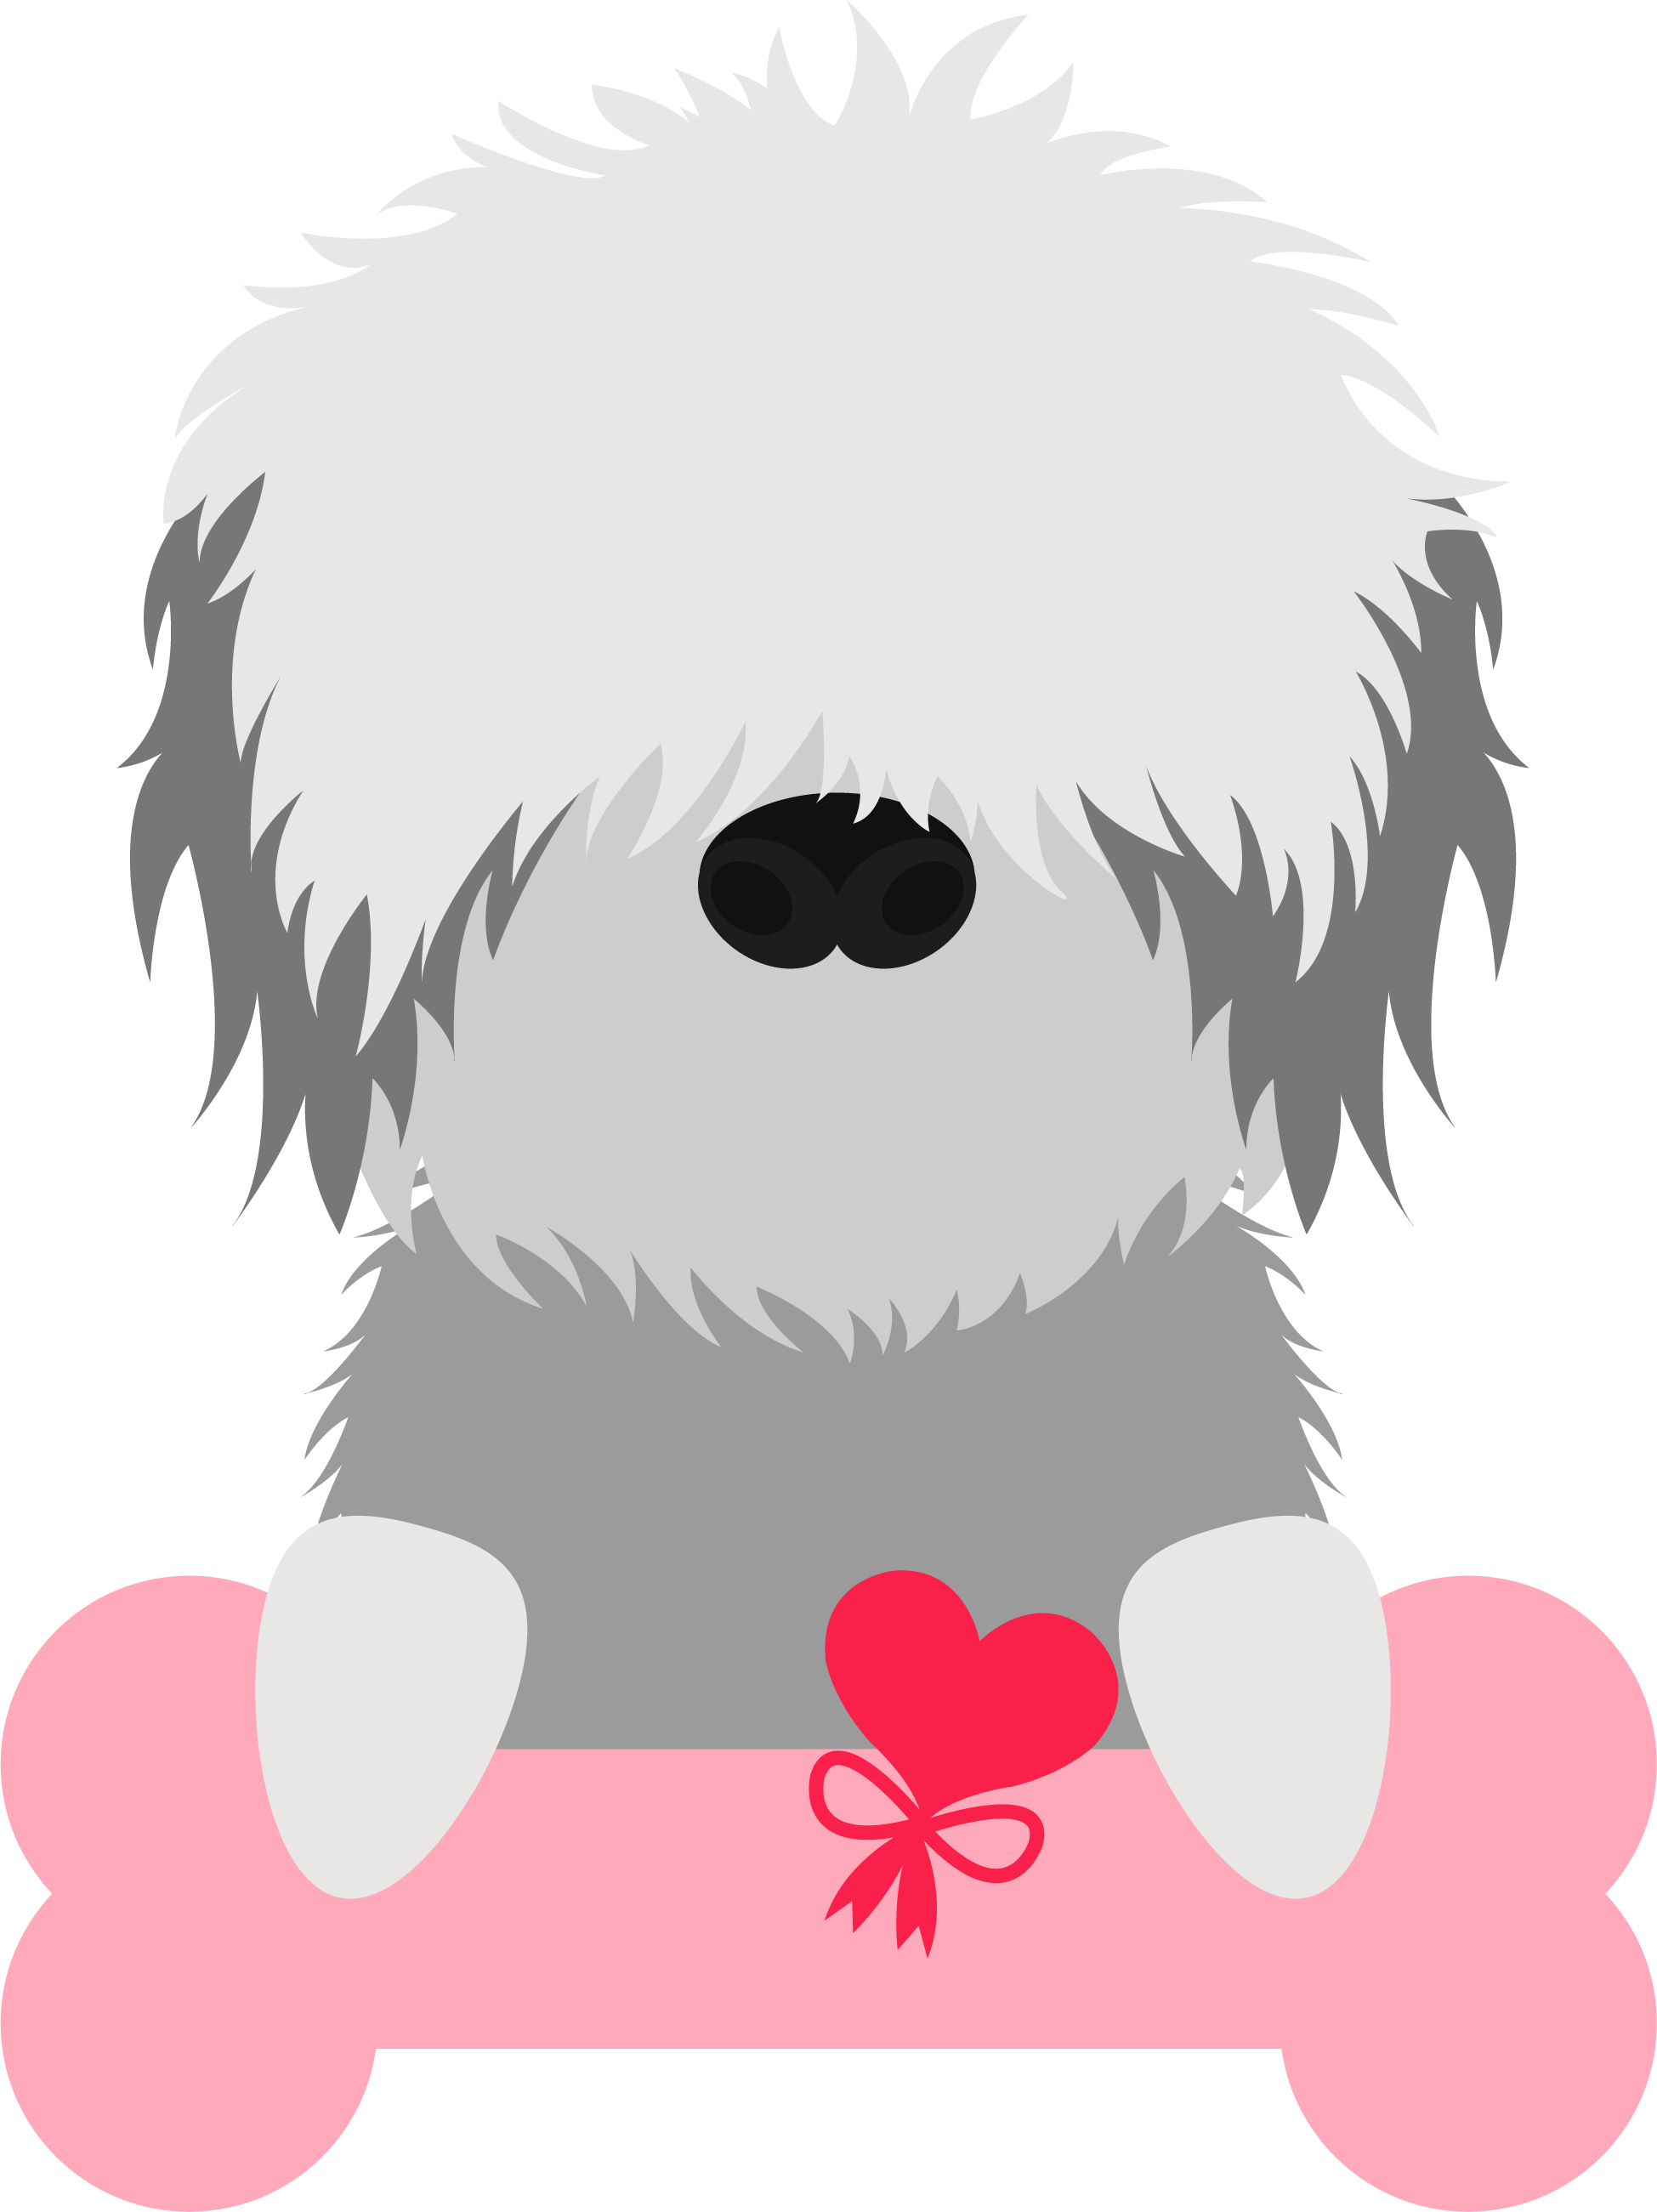 Sheep dog Valentine’s Day cookie cutter